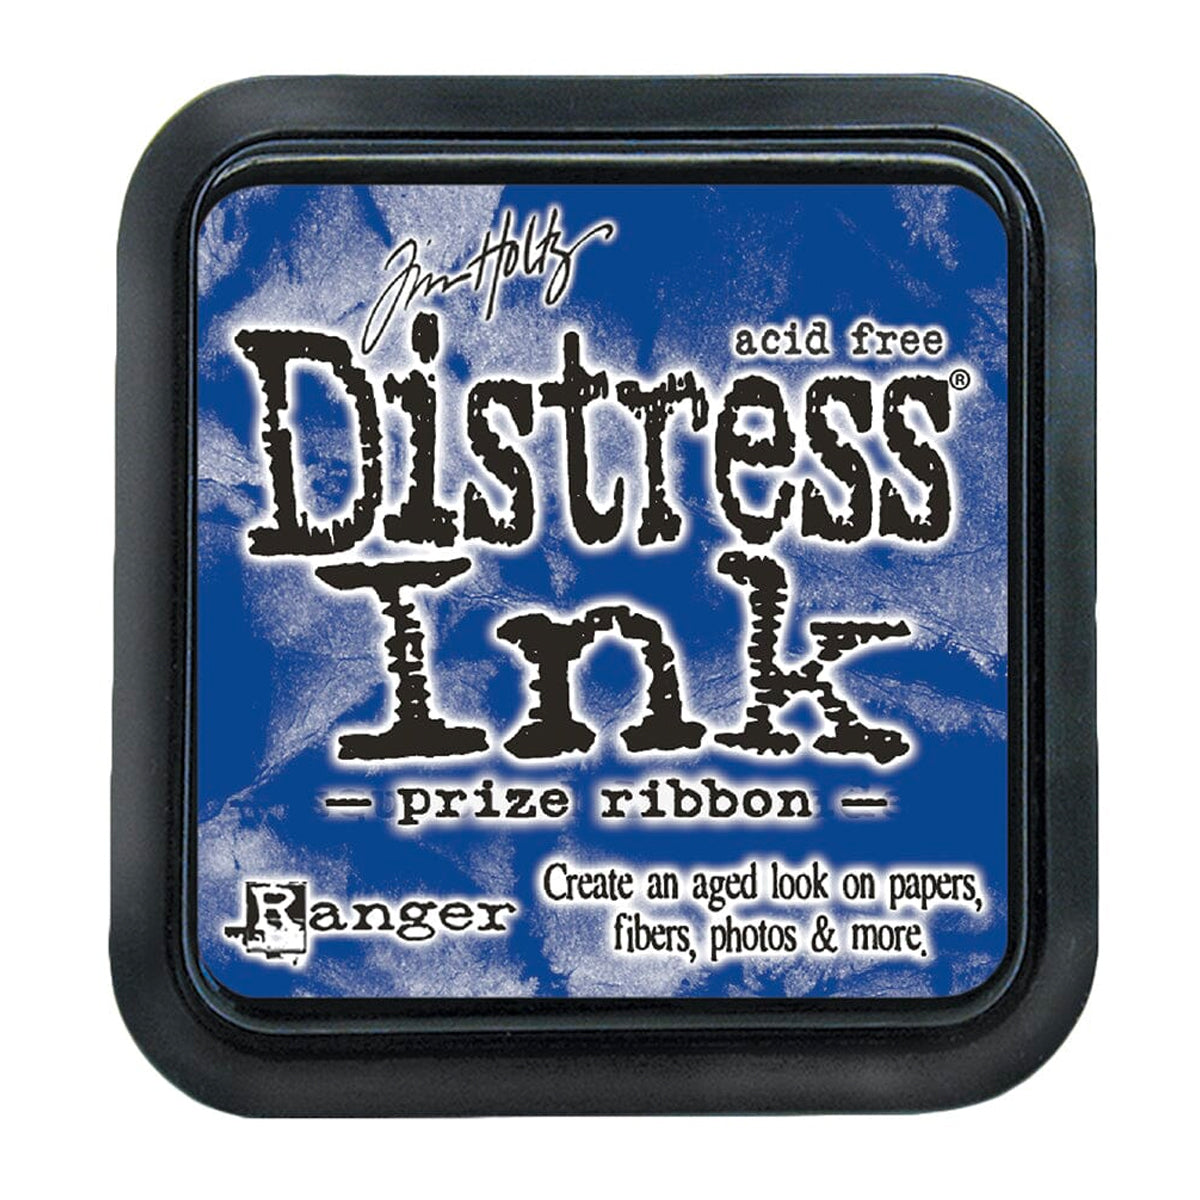 Tim Holtz Distress Dye Ink Pad - Prize Ribbon